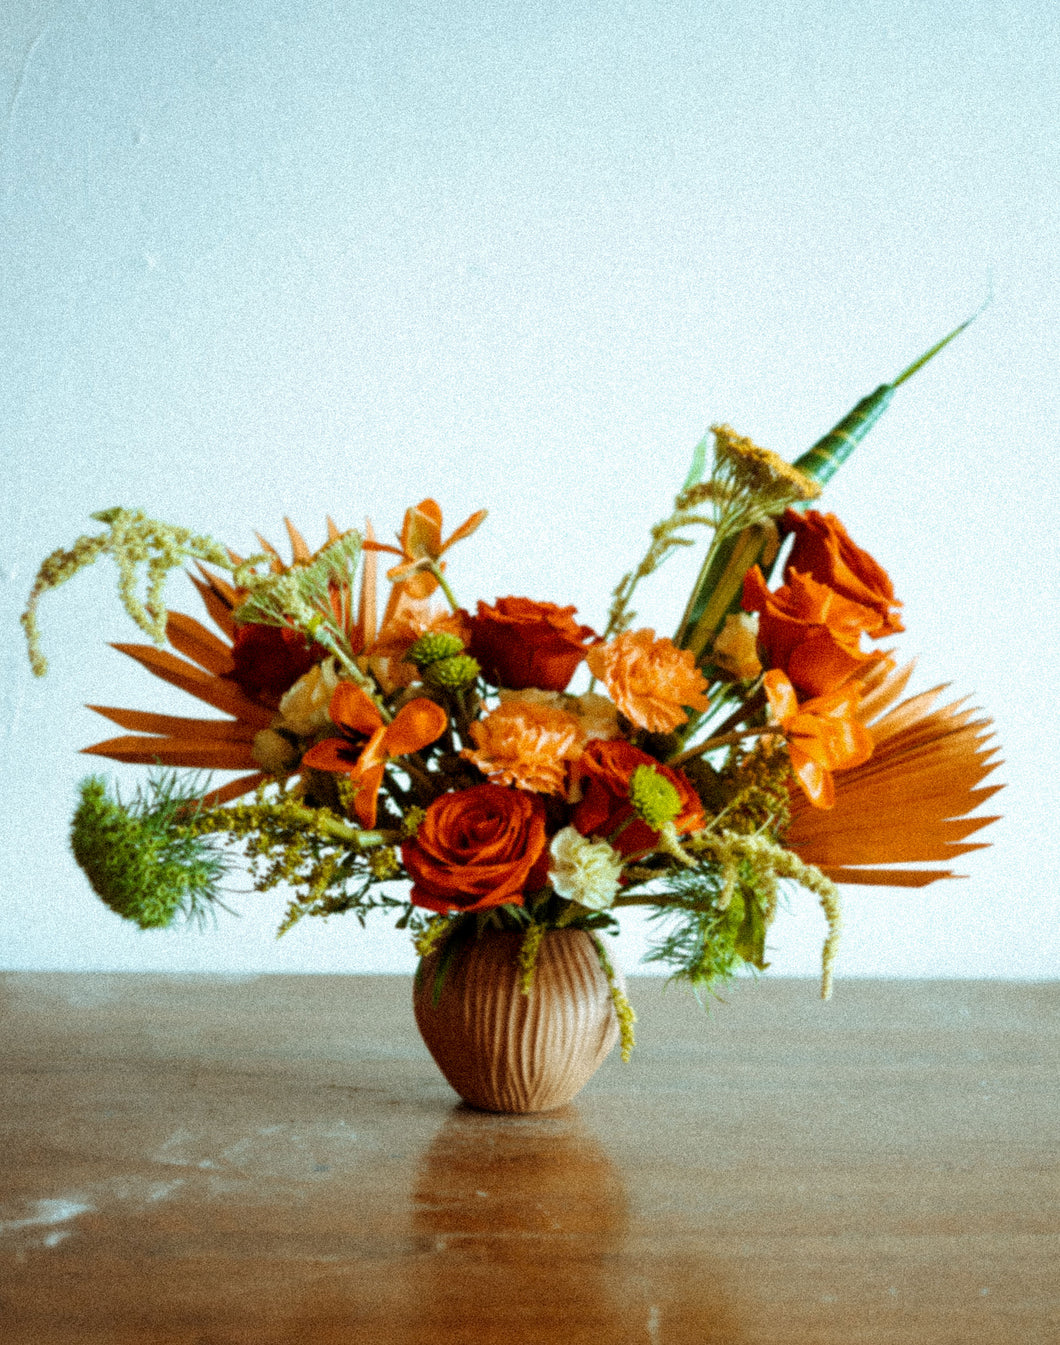 Florist's Choice Arrangement